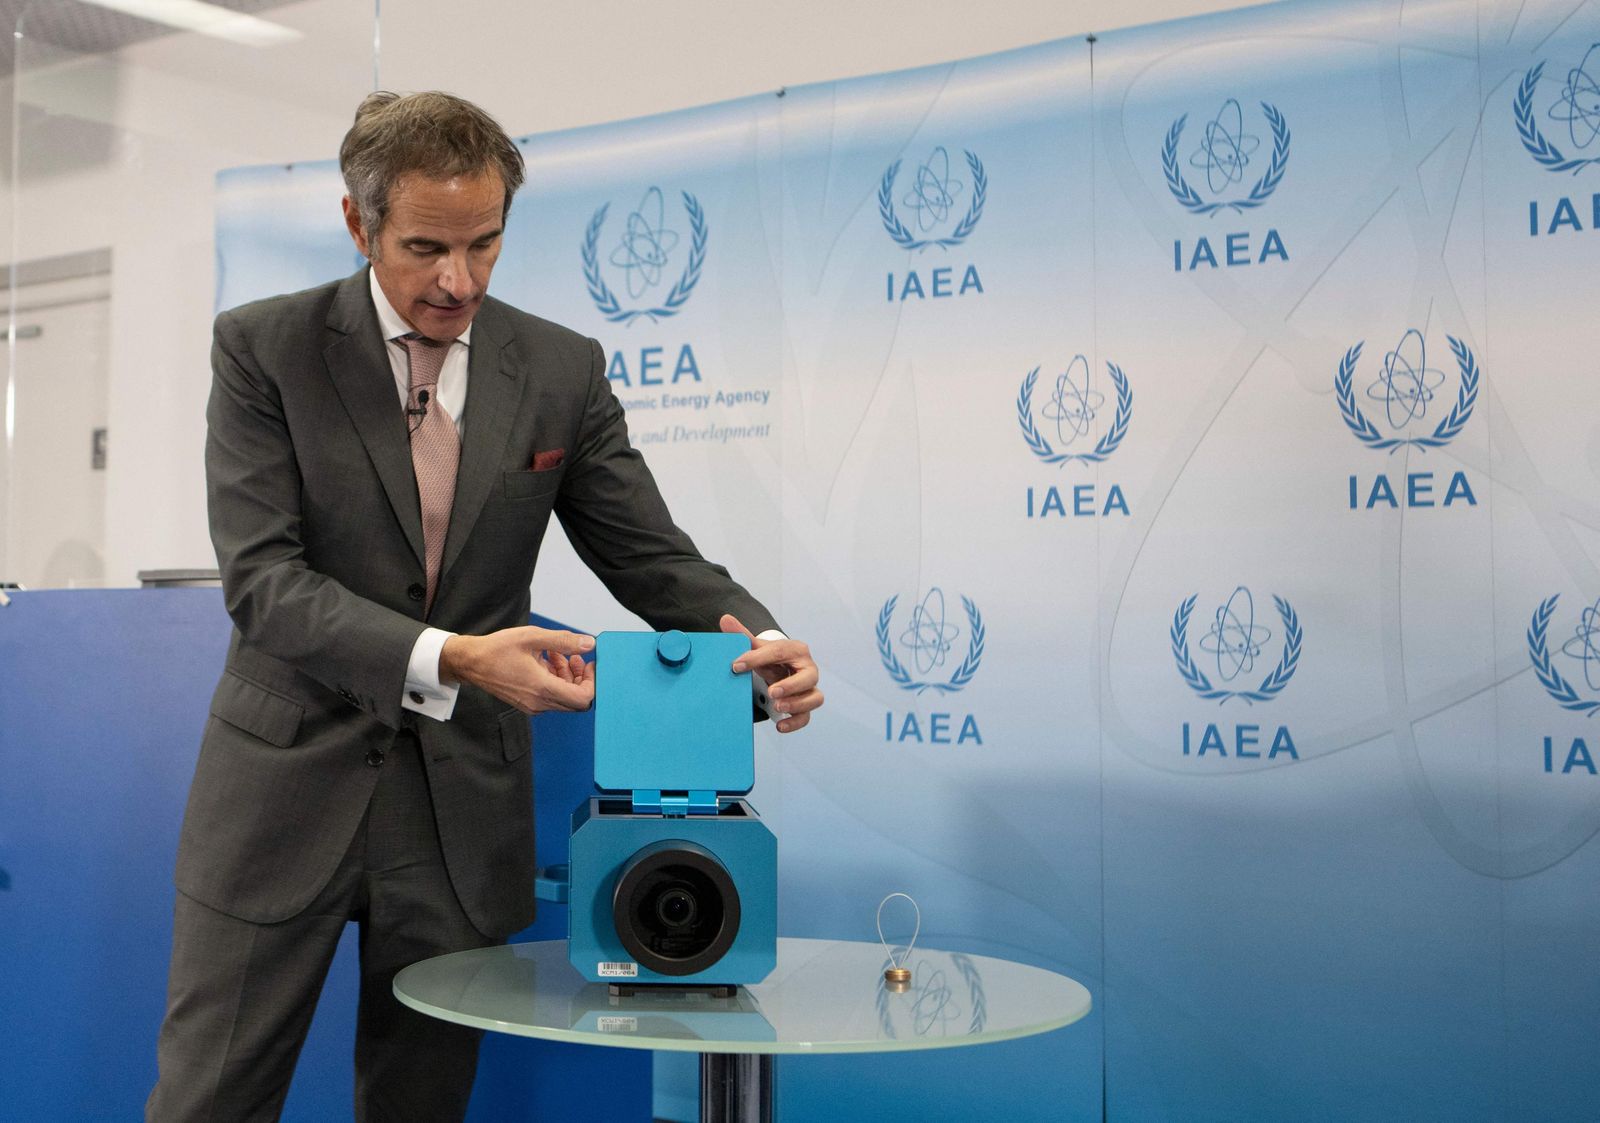 المدير العام لوكالة الطاقة الذرية رفاييل جروسي يعرض كاميرات المراقبة التي تستخدمها الوكالة في المنشآت النووية الإيرانية، خلال مؤتمر صحفي في جنيف. 17 ديسمبر 2021. - AFP